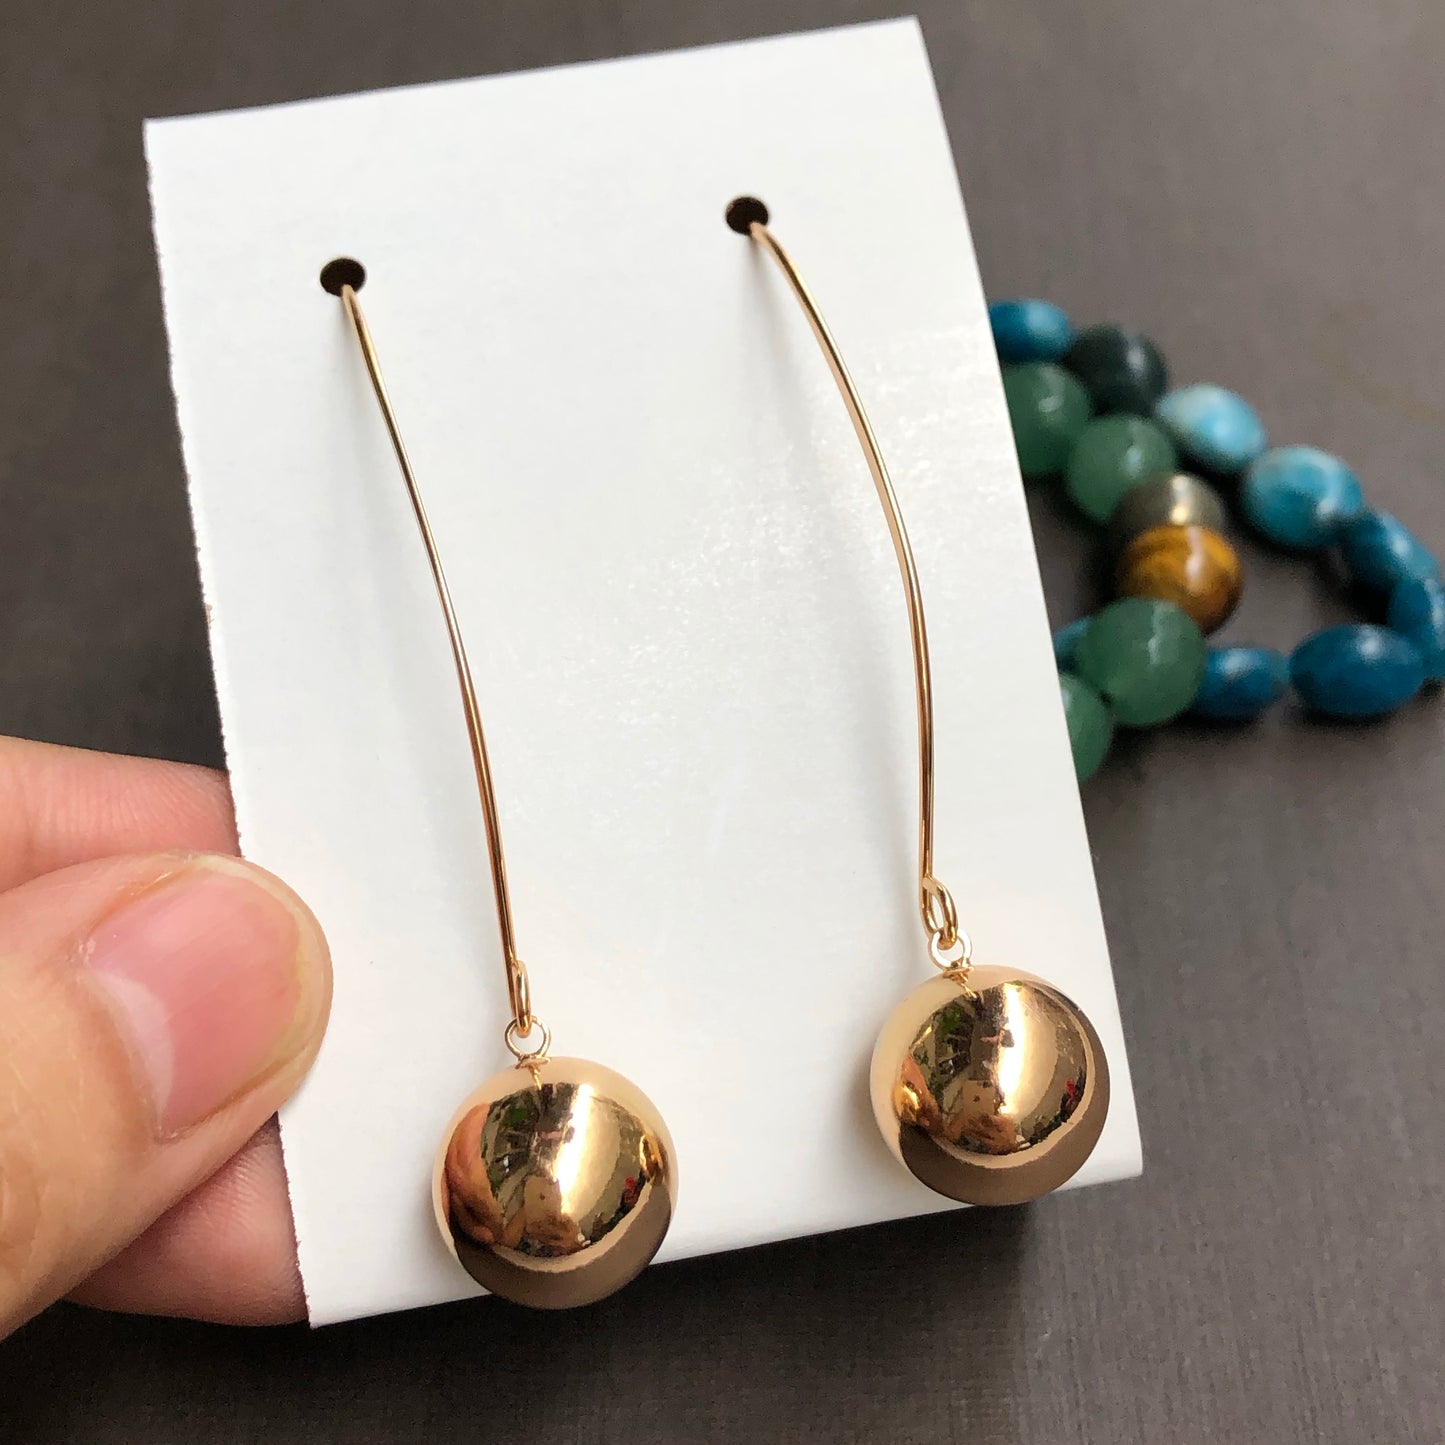 Solid Sphere Cat Ear Needle Drop Earrings in Gold Tone